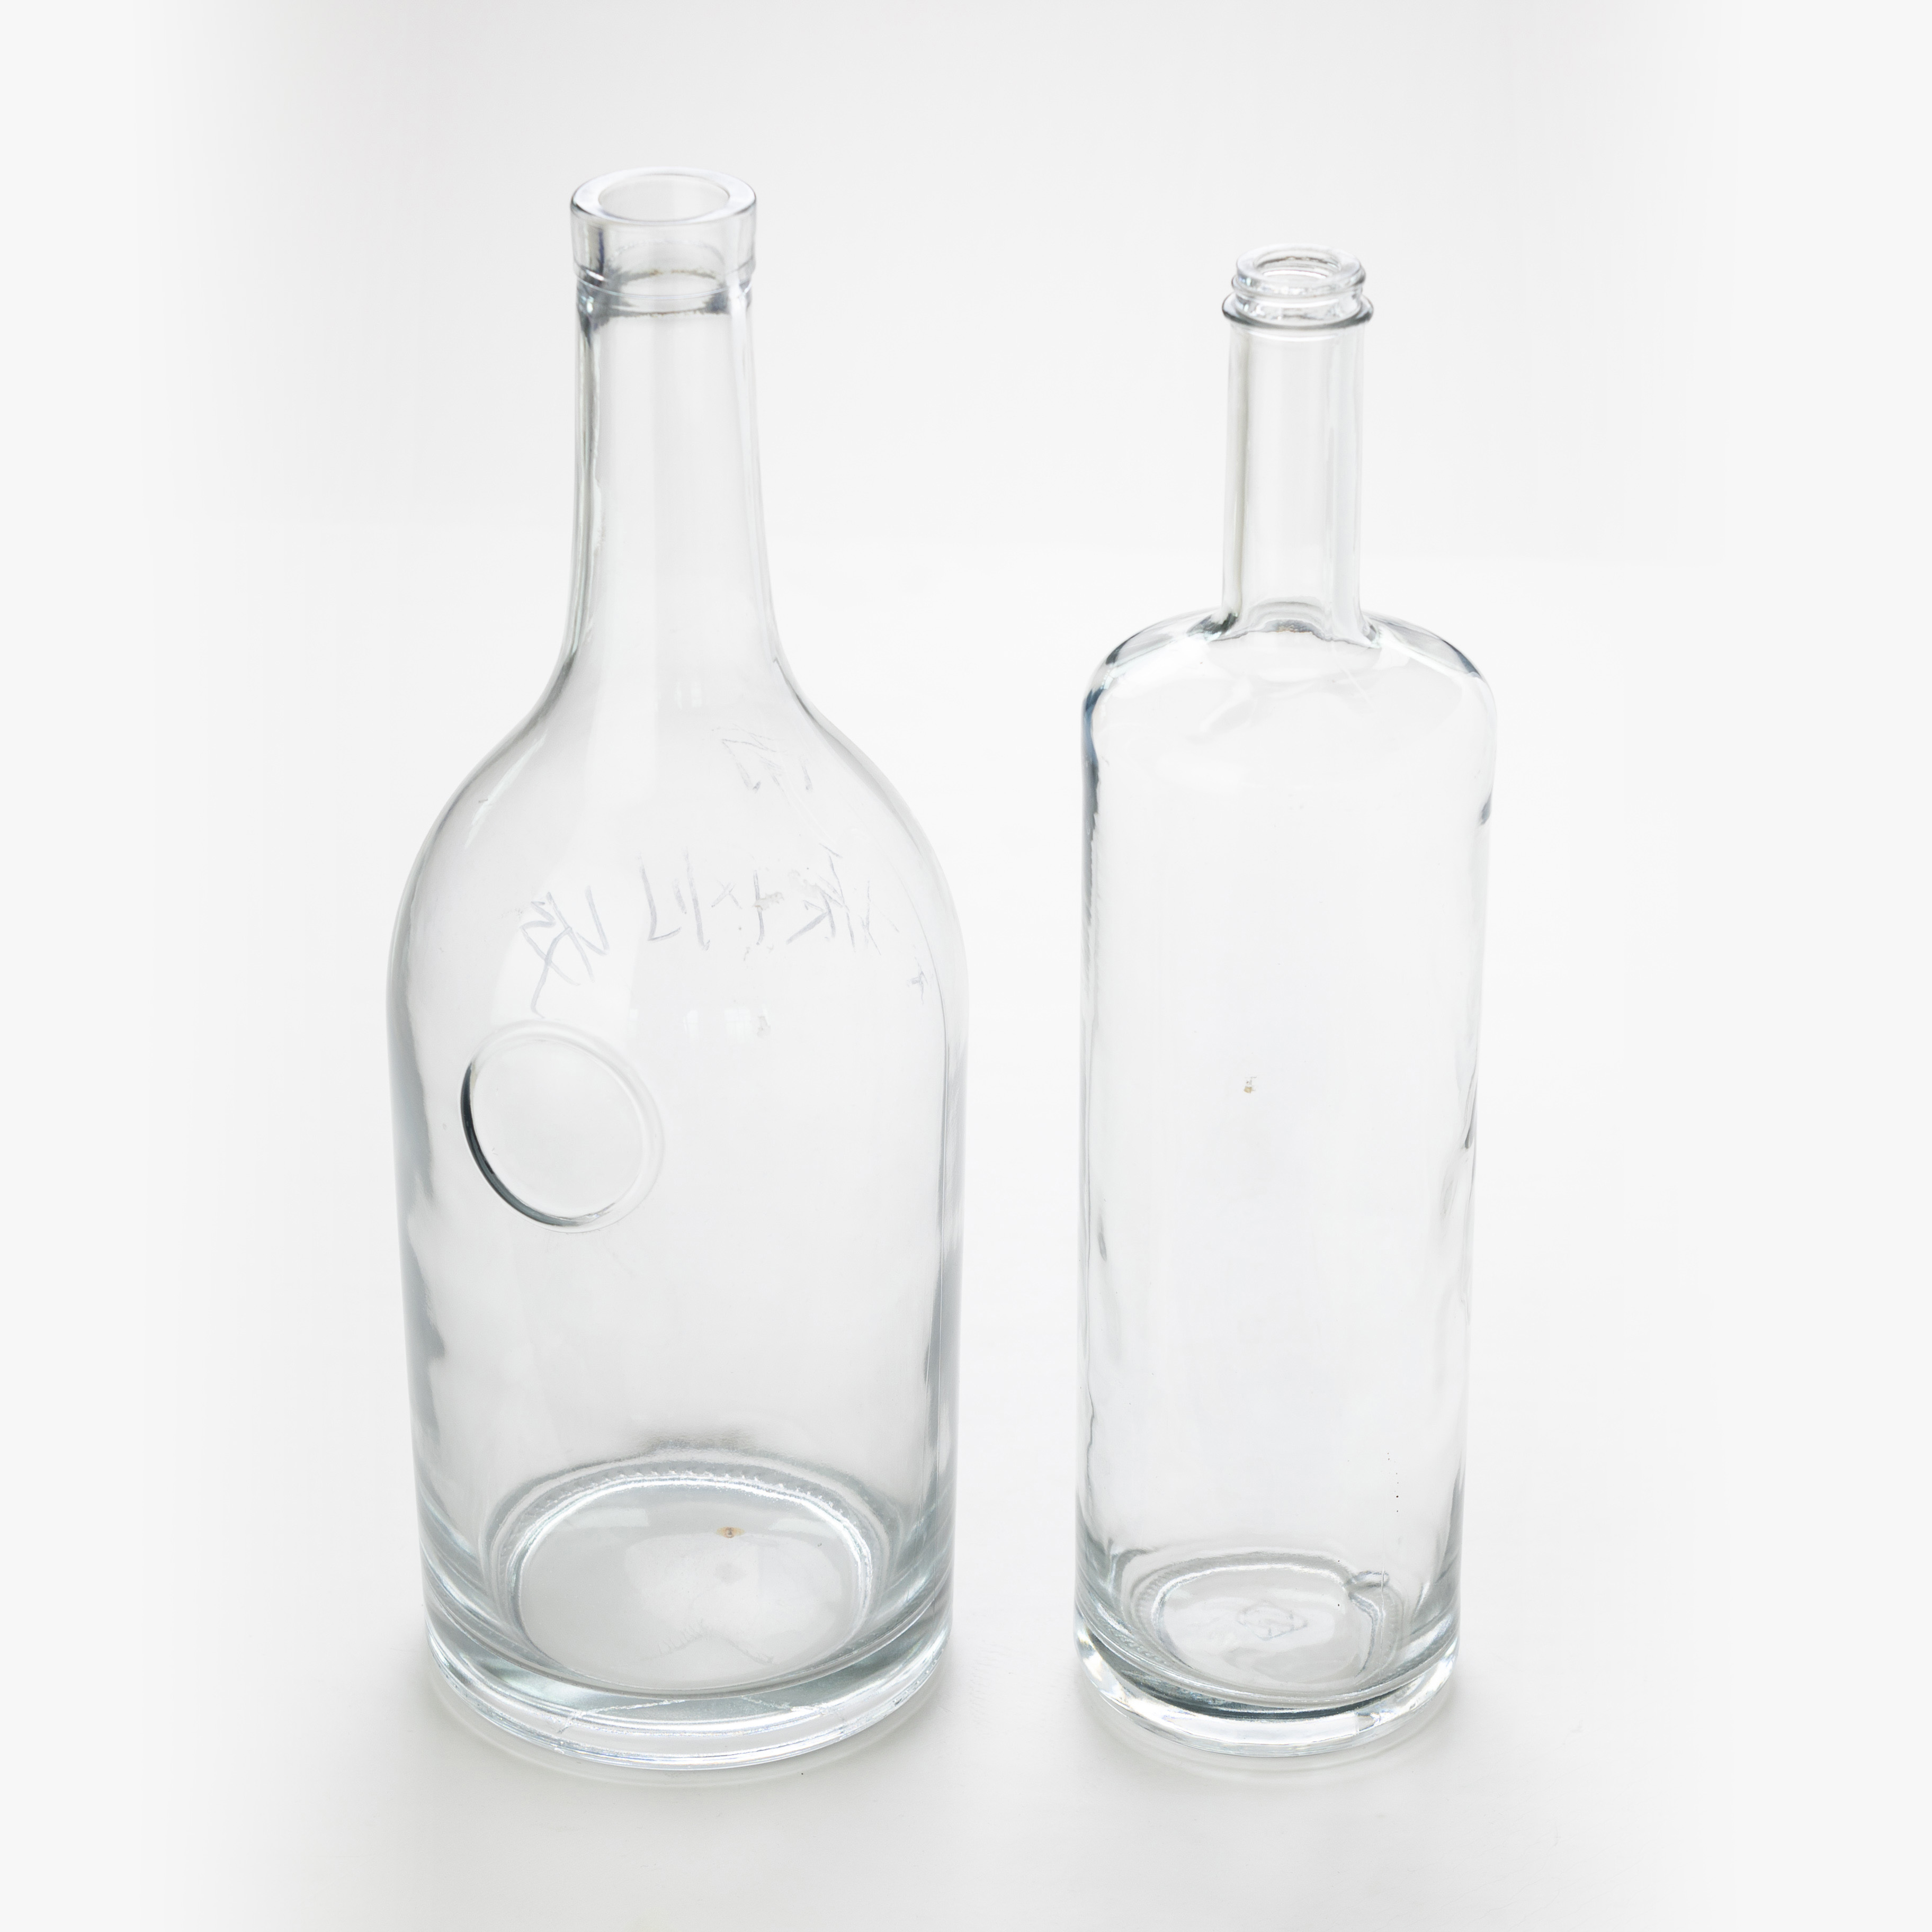 Sklenená fľaša rôzneho tvaru siprits